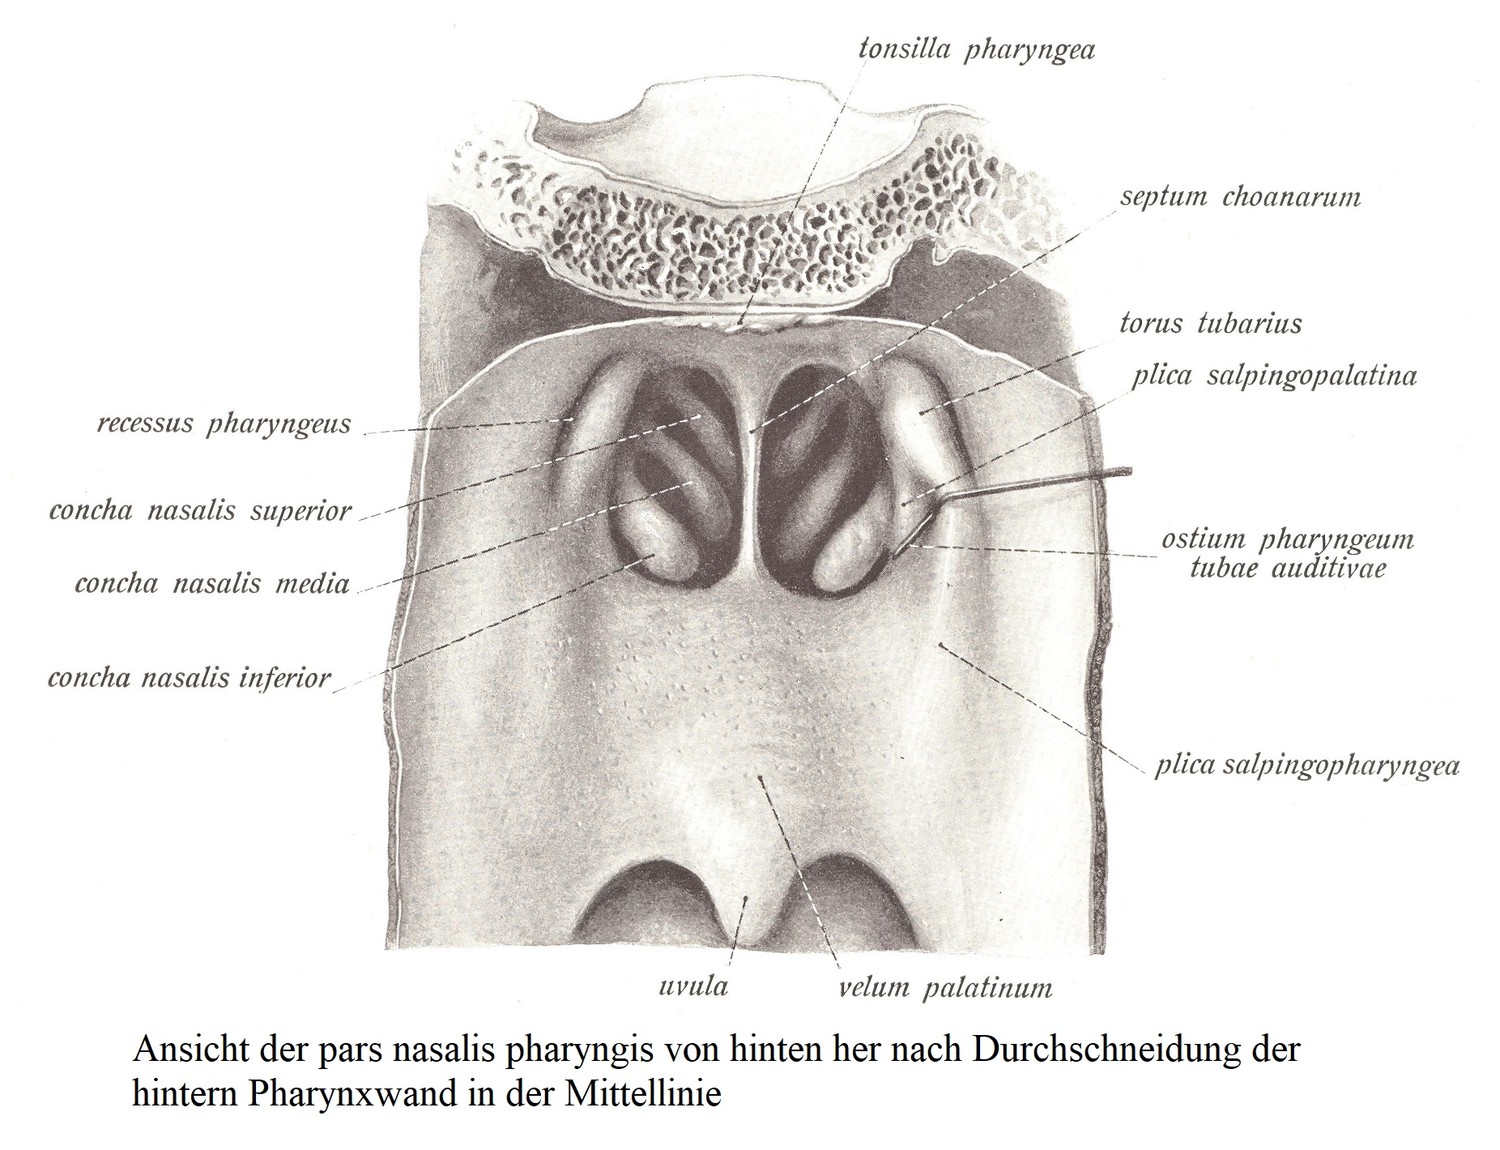 Вид сзади на глоточную часть носа после срединного разделения задней стенки глотки.